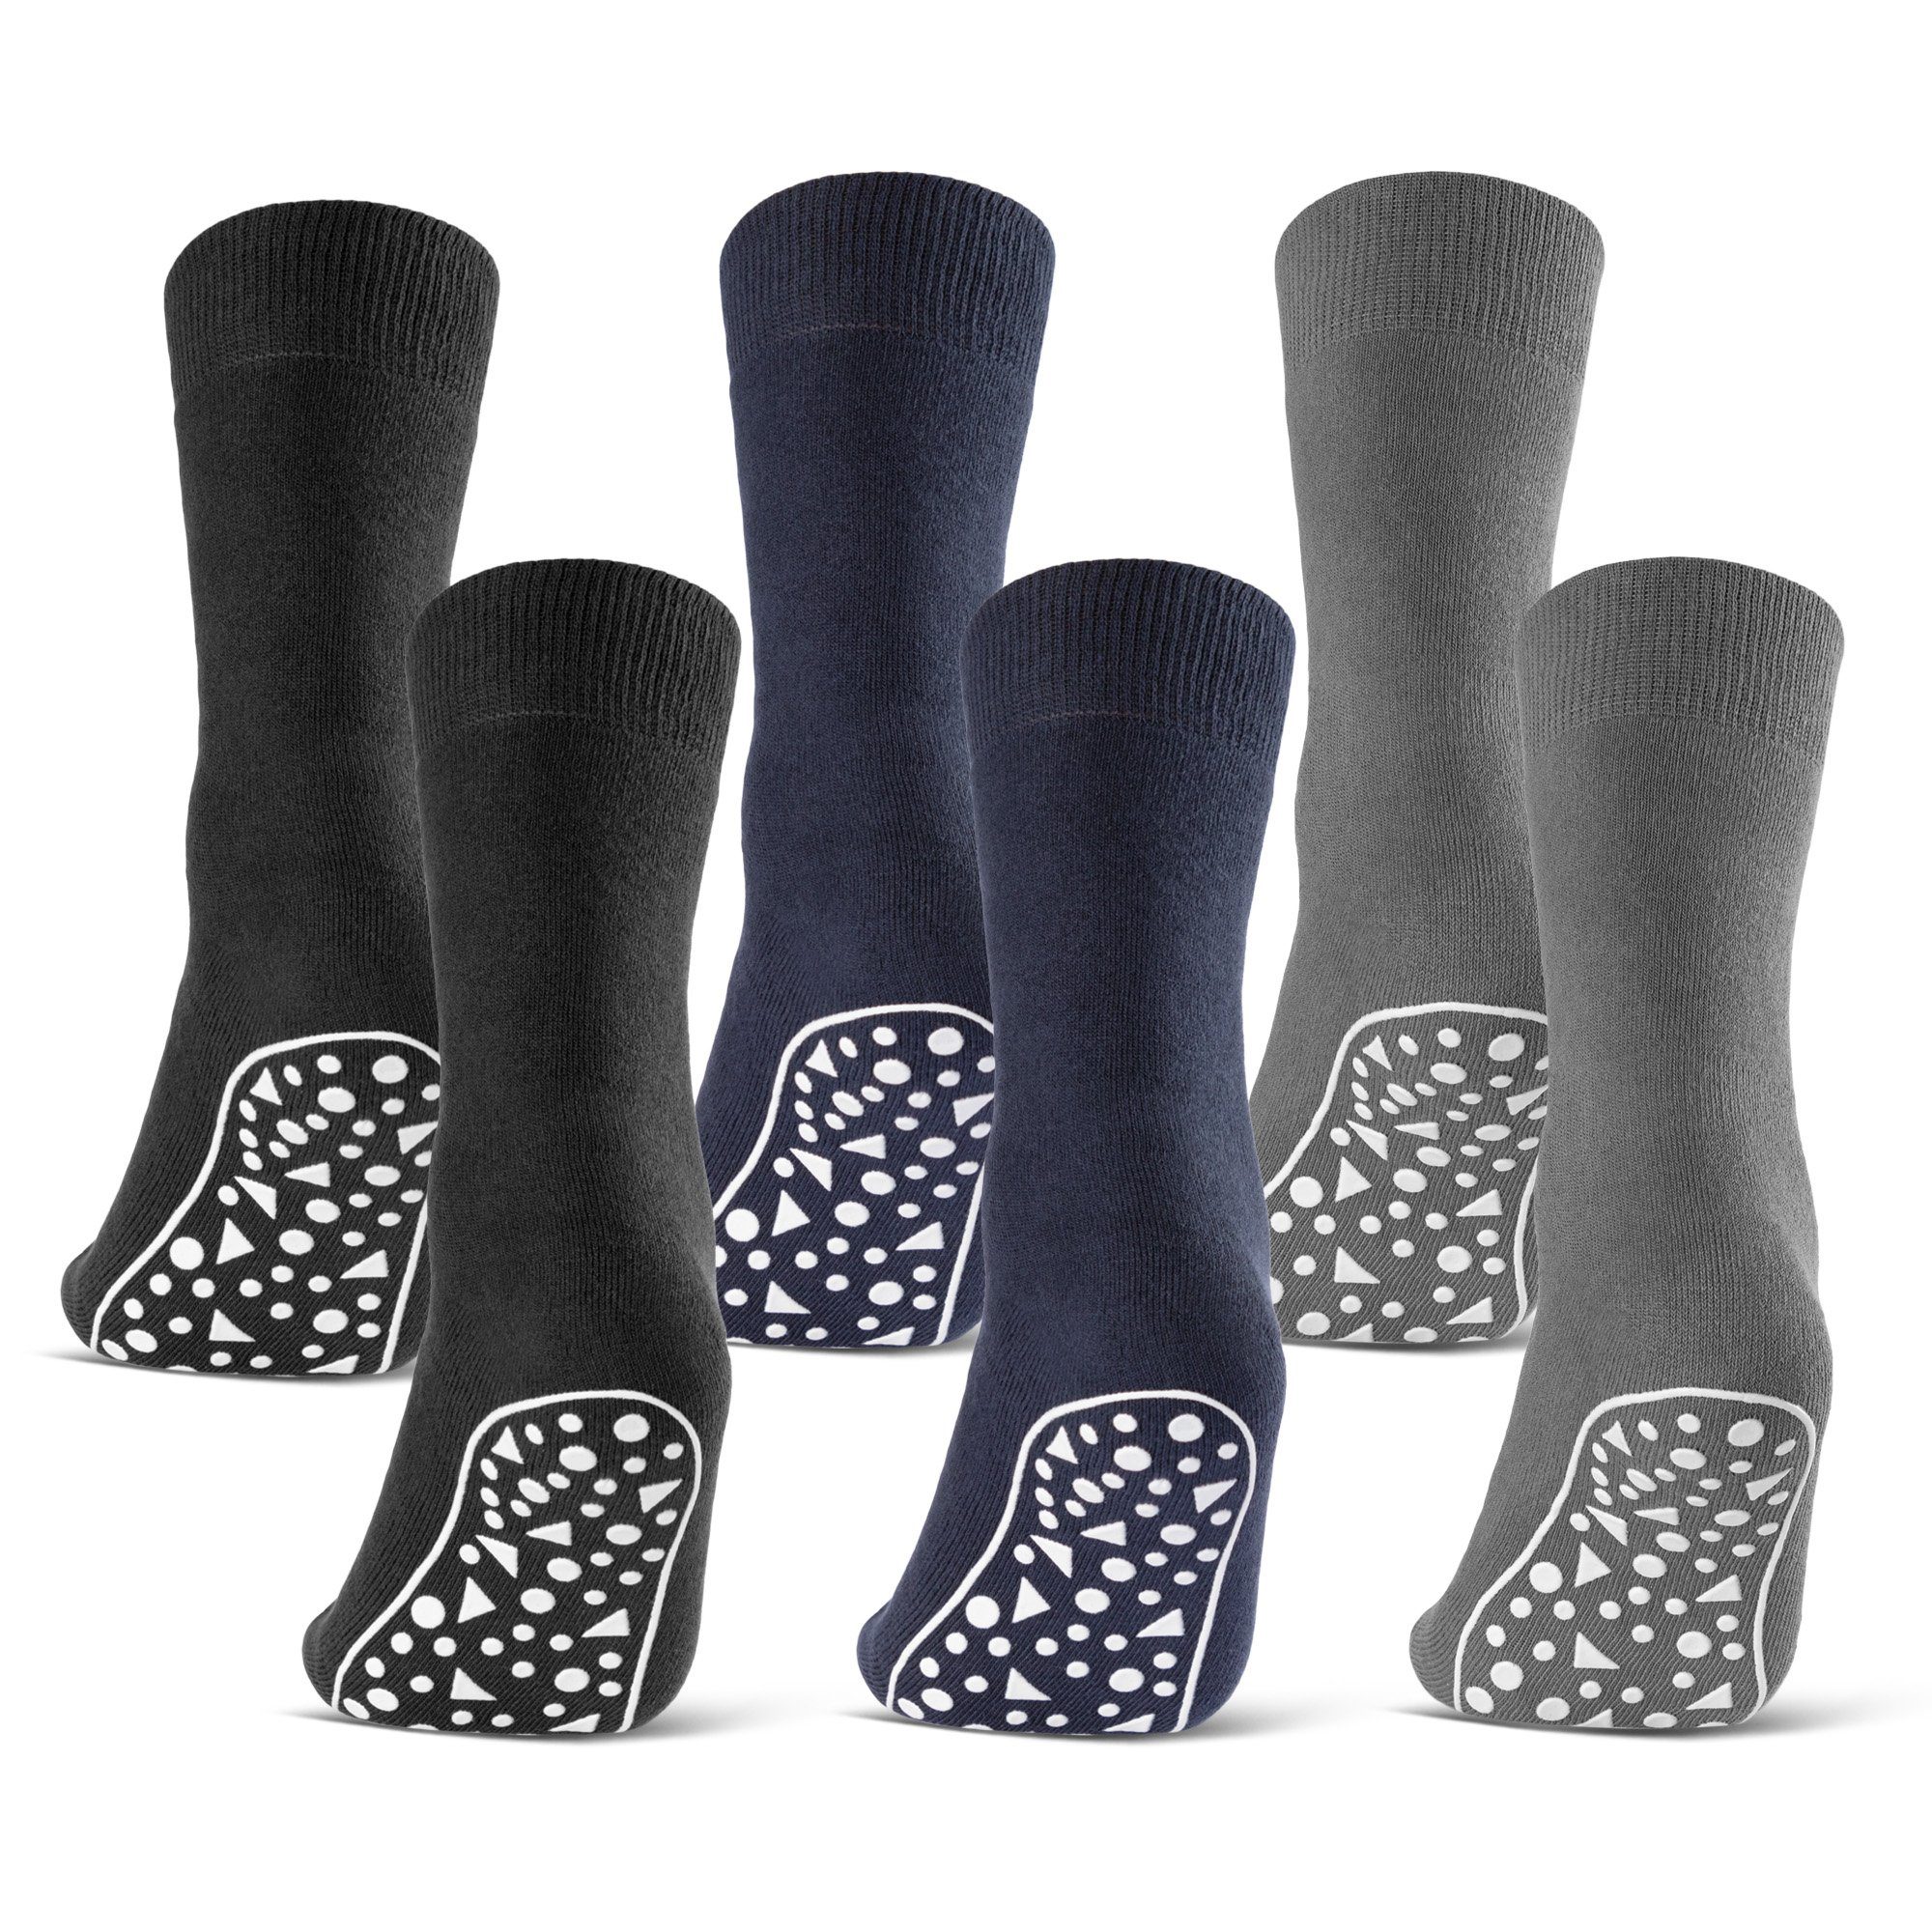 sockenkauf24 ABS-Socken 2, 4, 6 Paar Damen & Herren Anti Rutsch Socken Baumwolle (Schwarz, Blau, Grau, 6-Paar, 47-50) Stoppersocken Noppensocken - 21395 WP